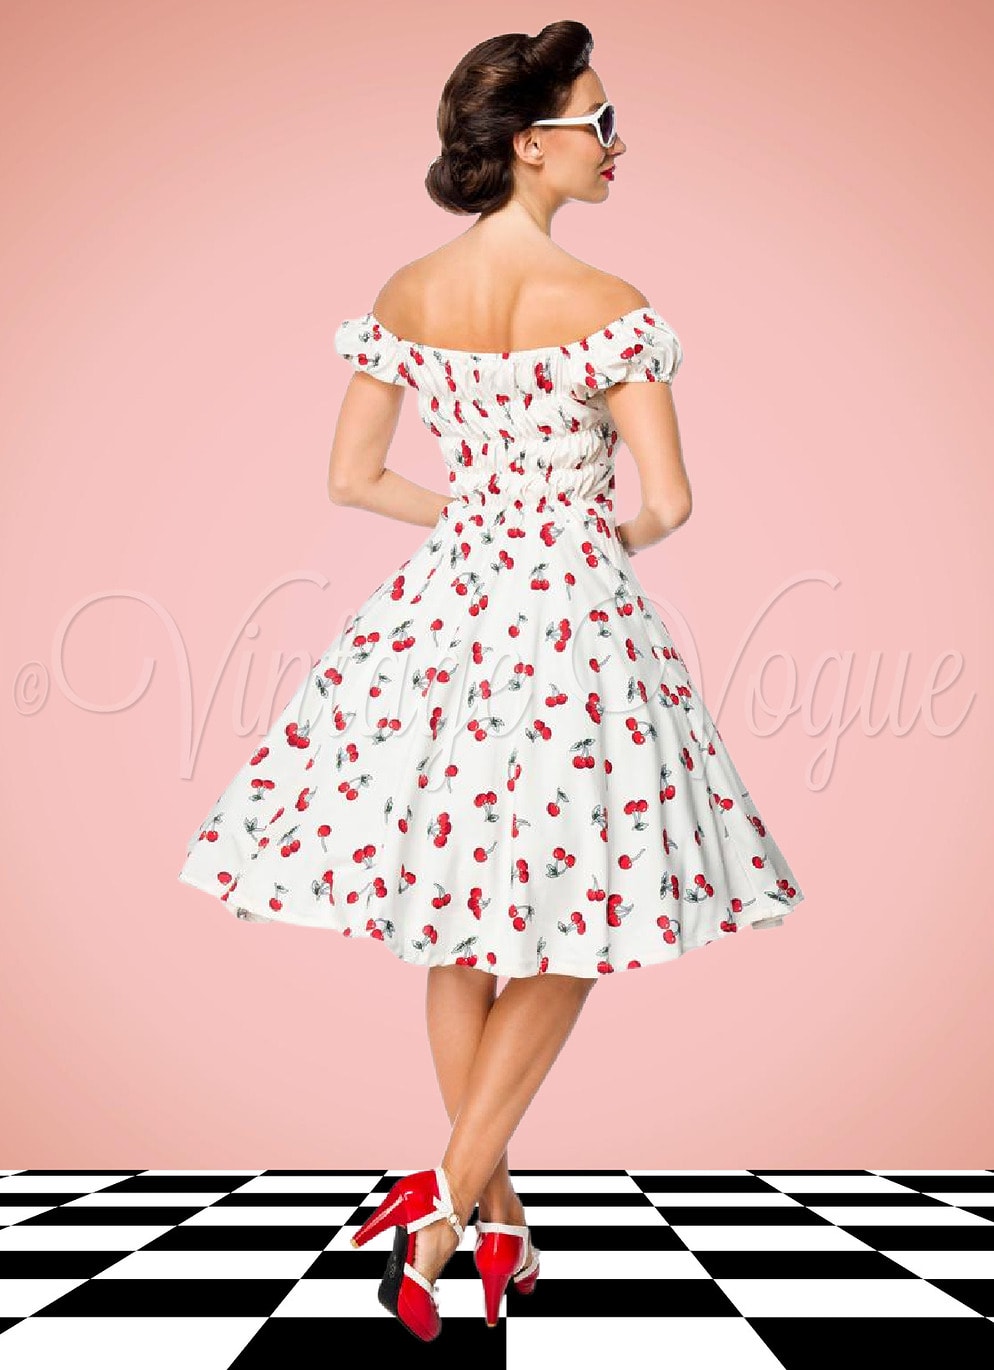 Belsira 50's Retro Rockabilly Pin-Up Swing Kleid mit Kirschen Muster in Weiß Petticoat Damen Damenkleid Cherry Jive Lindy Hop Mottoparty Rock n Roll